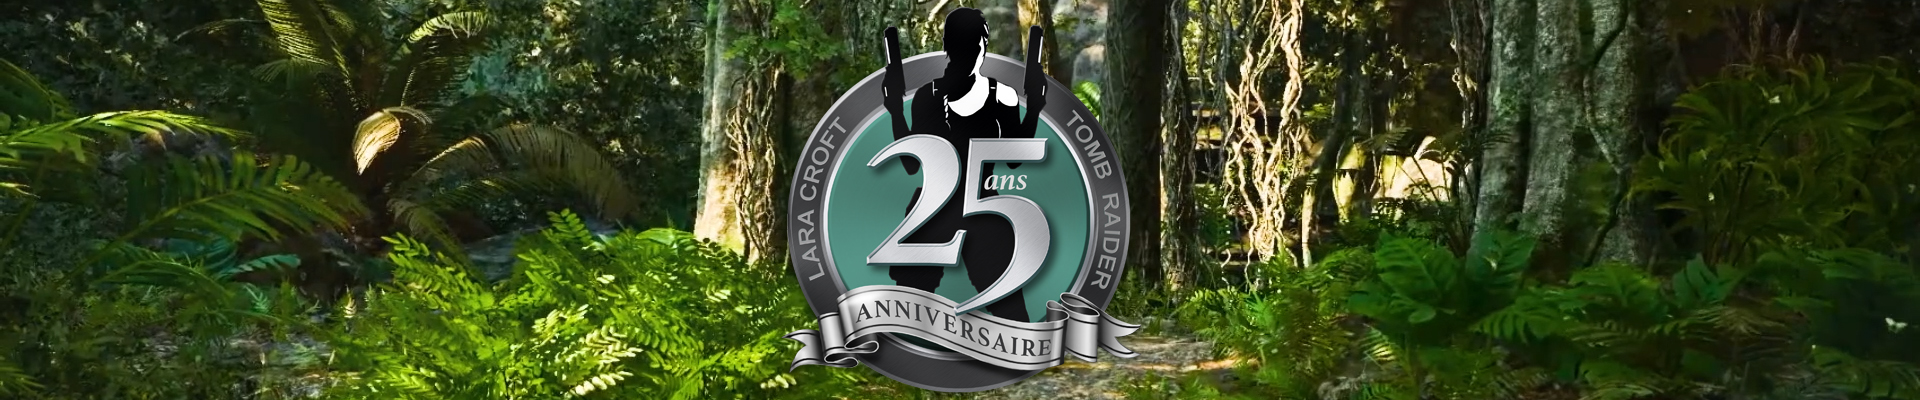 Annonce de la célébration des 25 ans de Tomb Raider